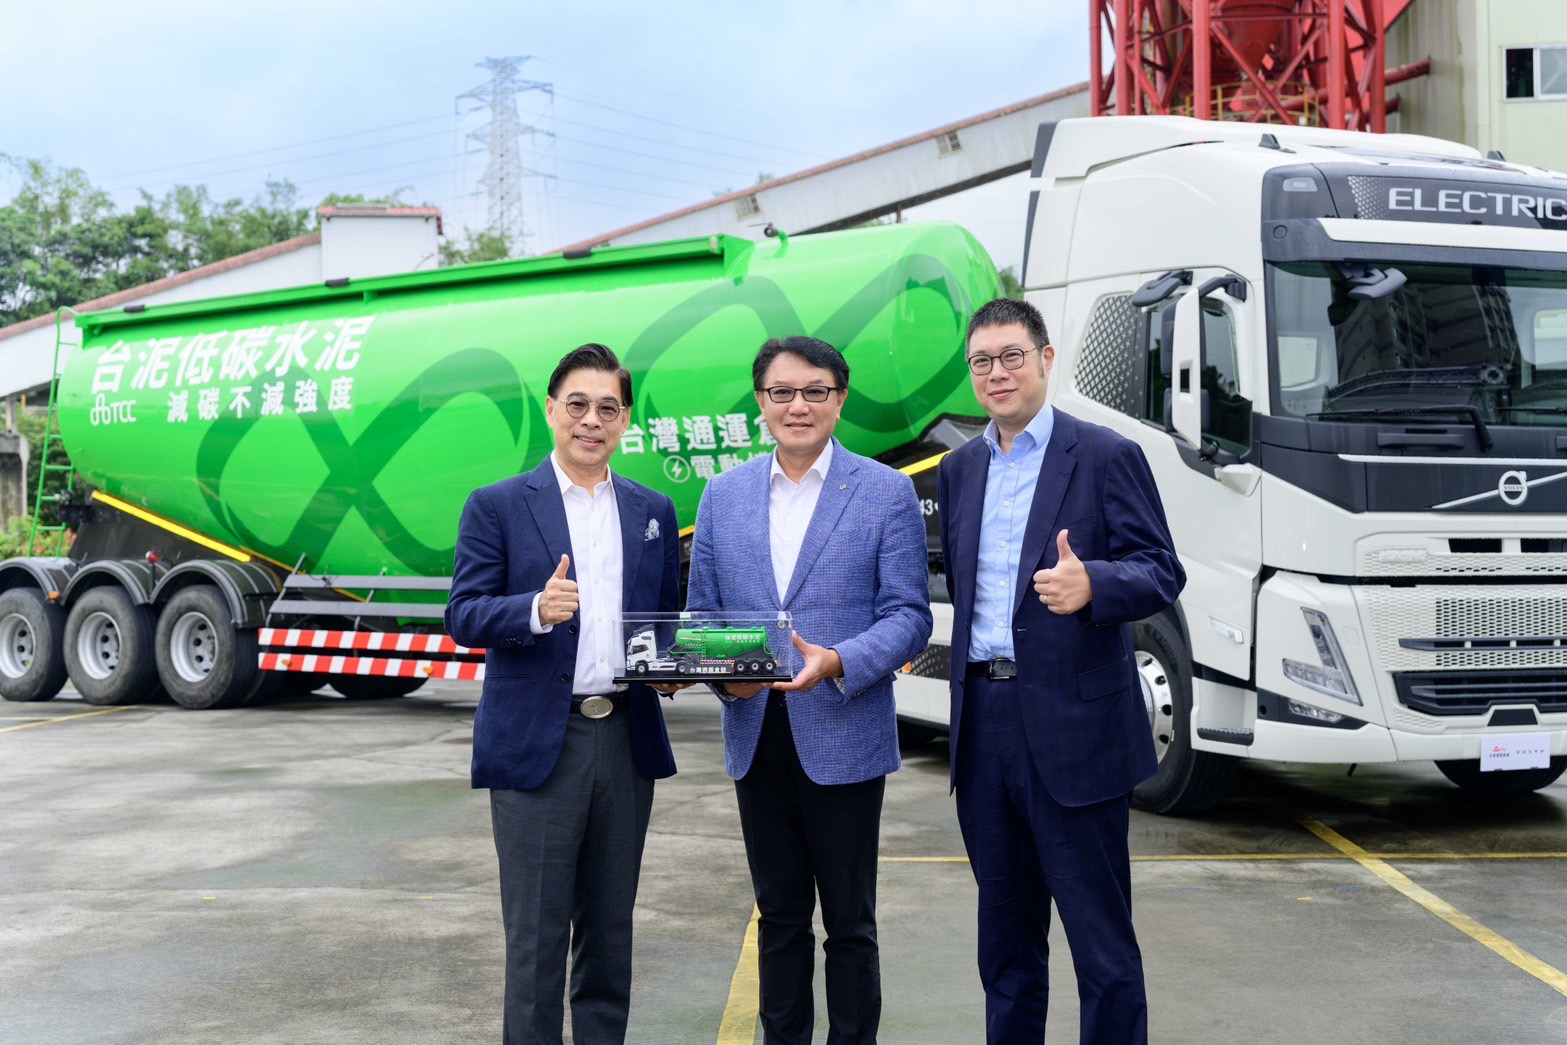 擴大布局綠色物流 台灣通運引進VOLVO電動曳引車  台泥低碳水泥運送改採電動曳引車 減碳32%